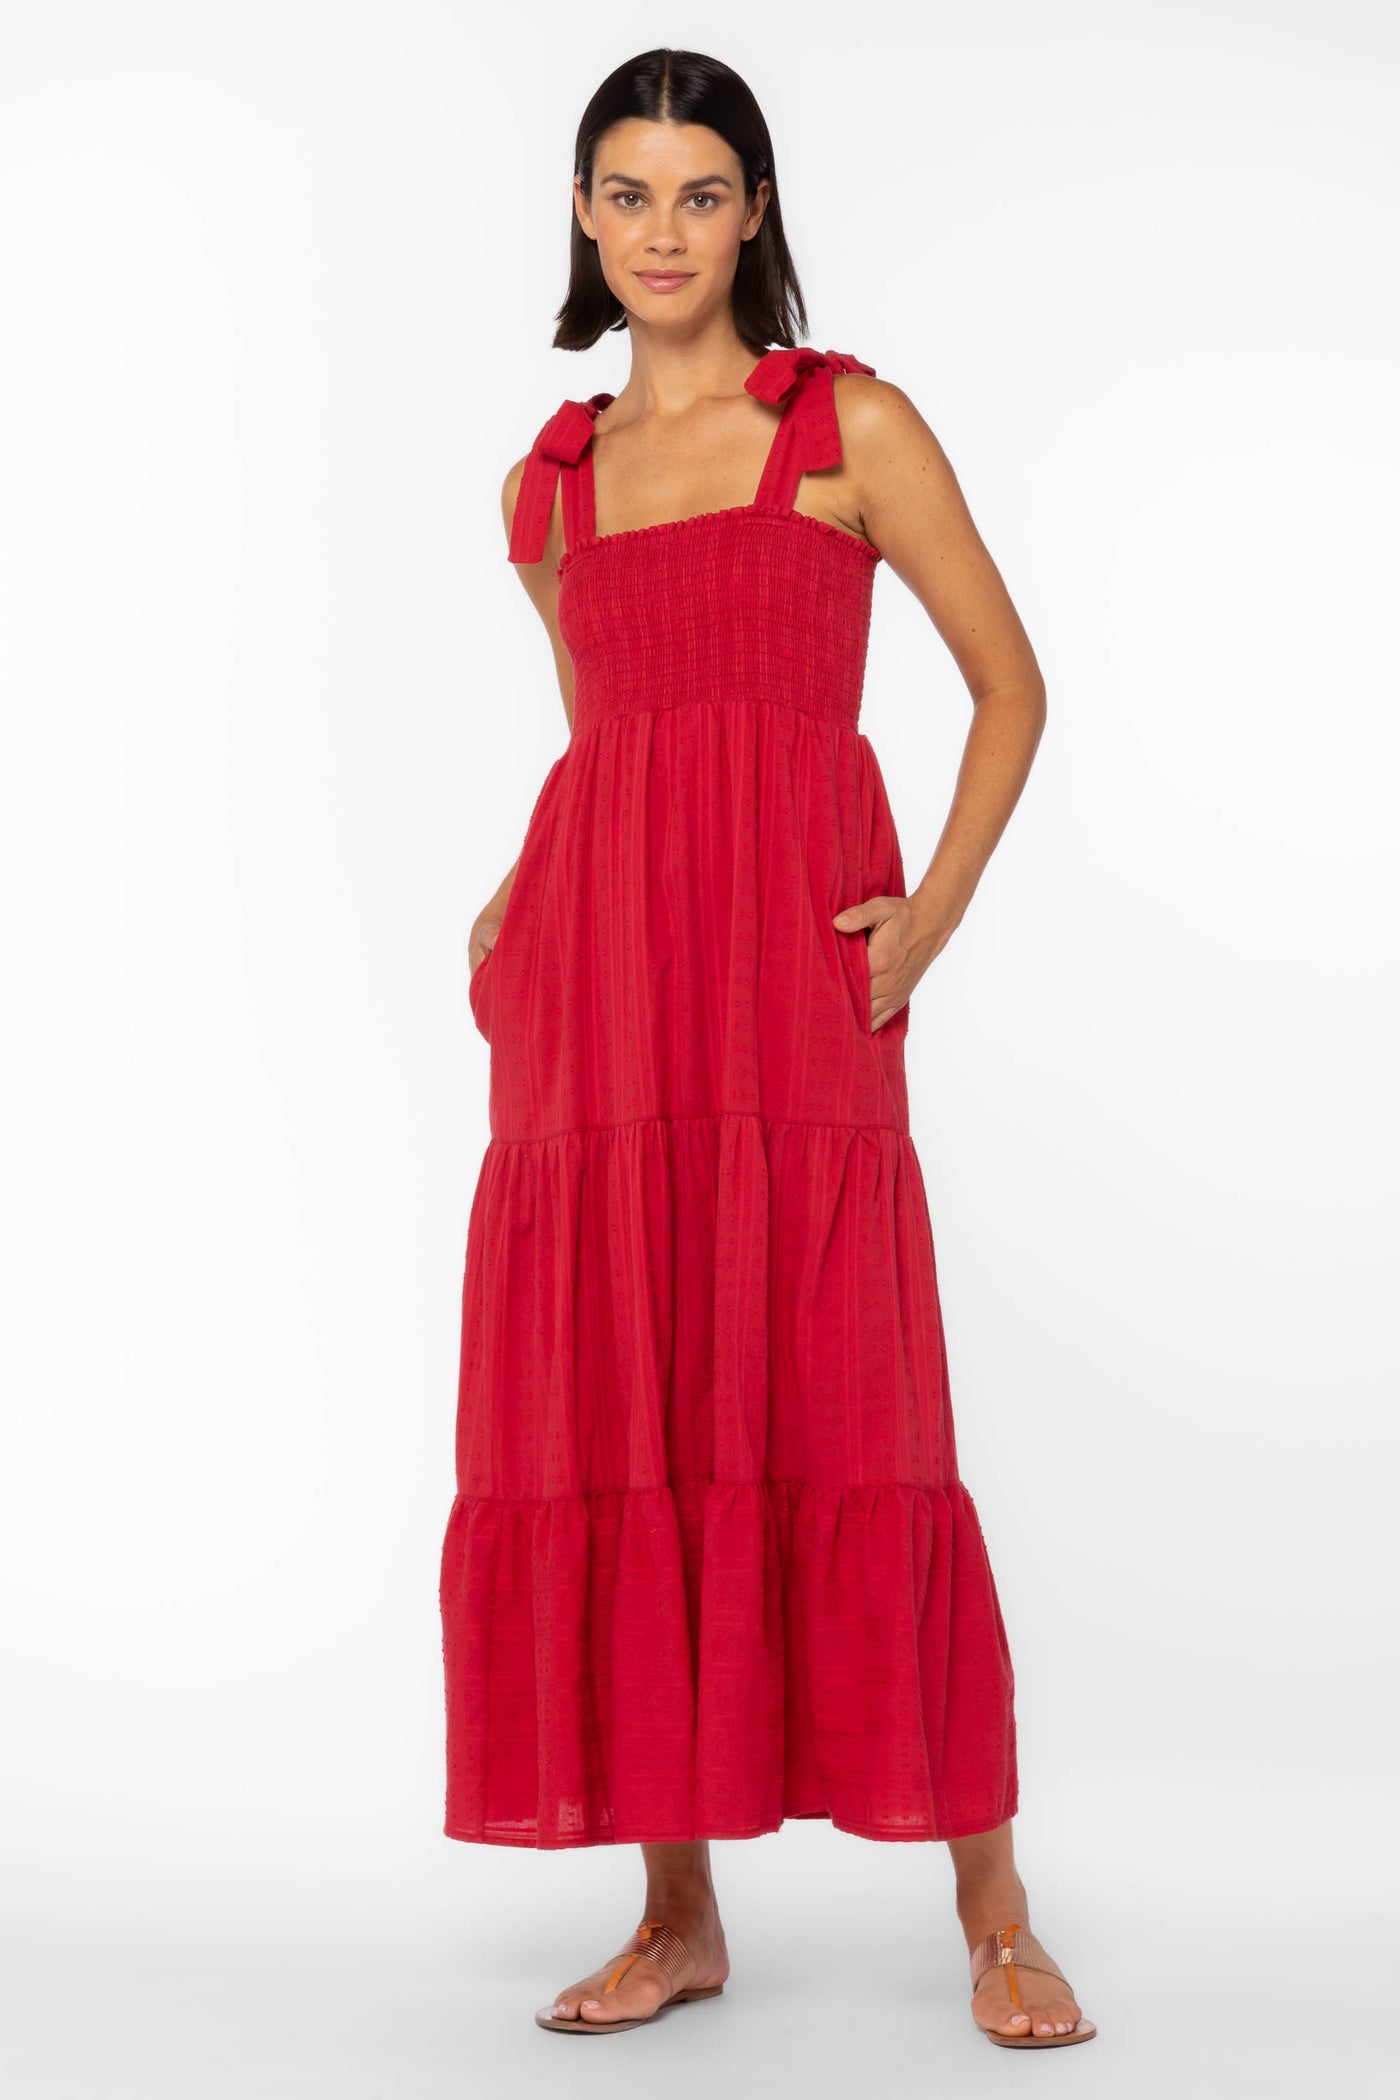 Kathy Red Dress - Dresses - Velvet Heart Clothing